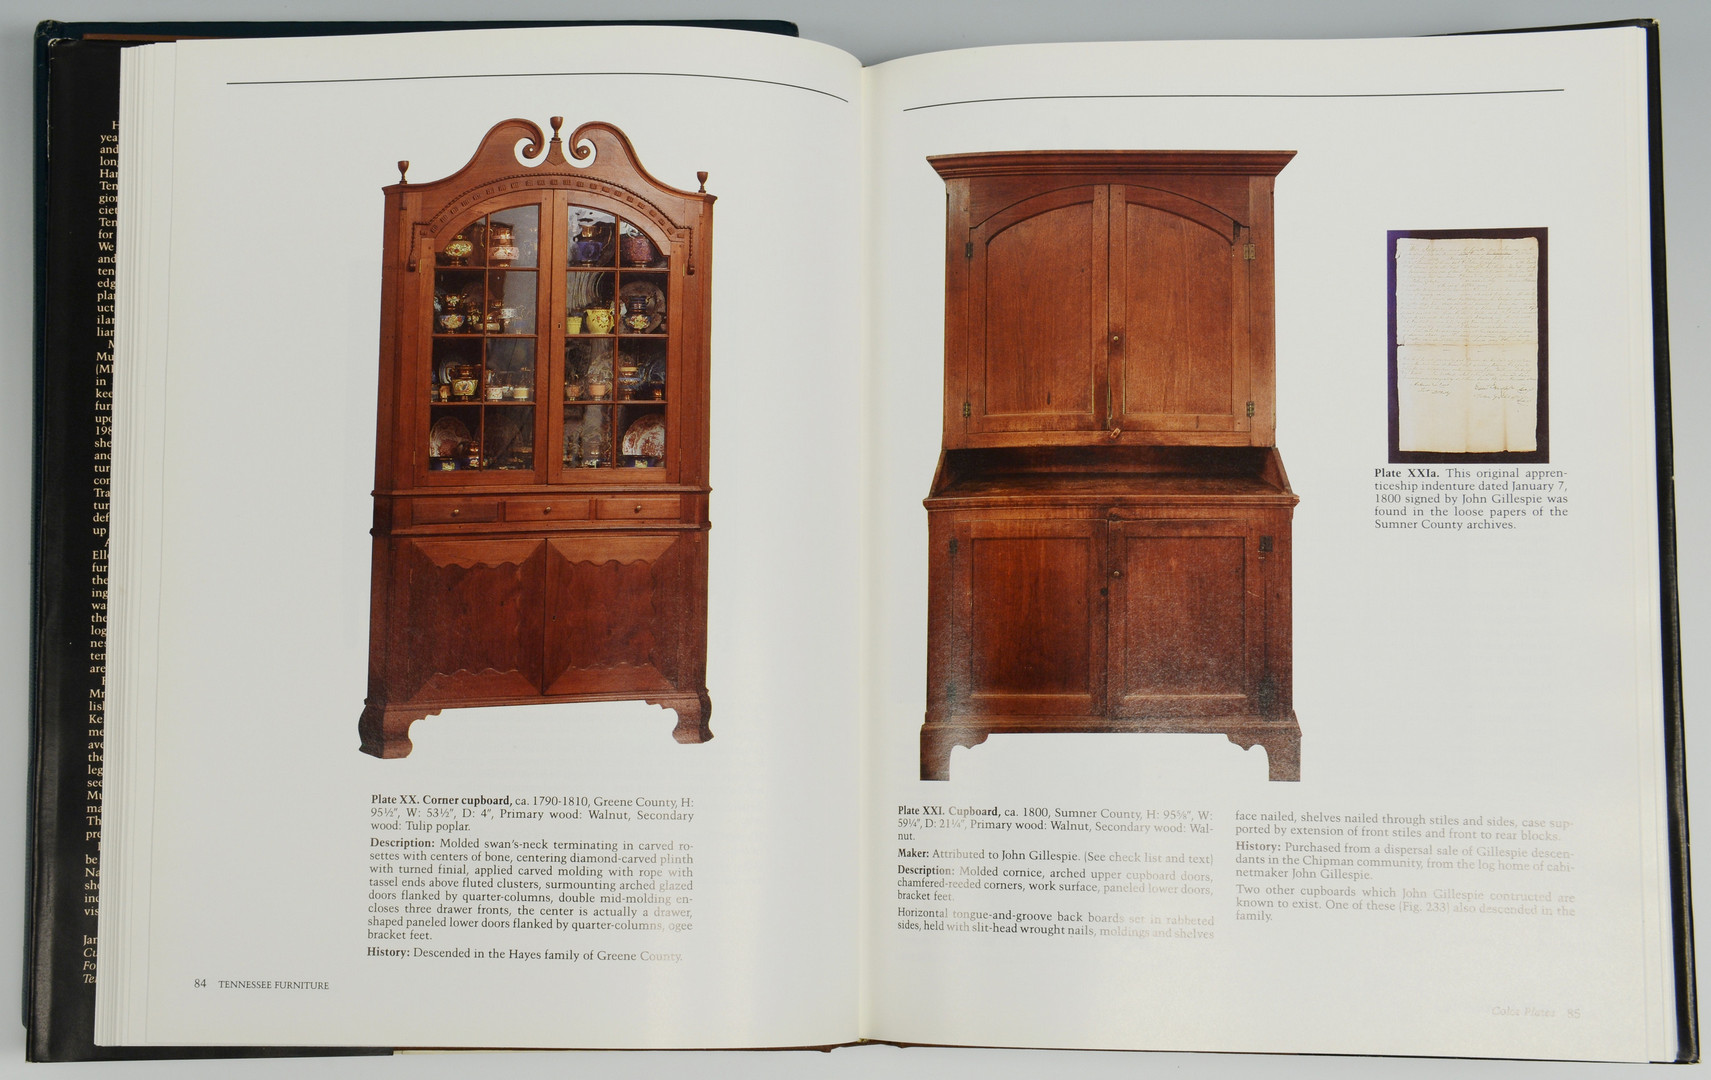 Lot 76: 2 TN Books incl. Art & Mystery of TN Furniture